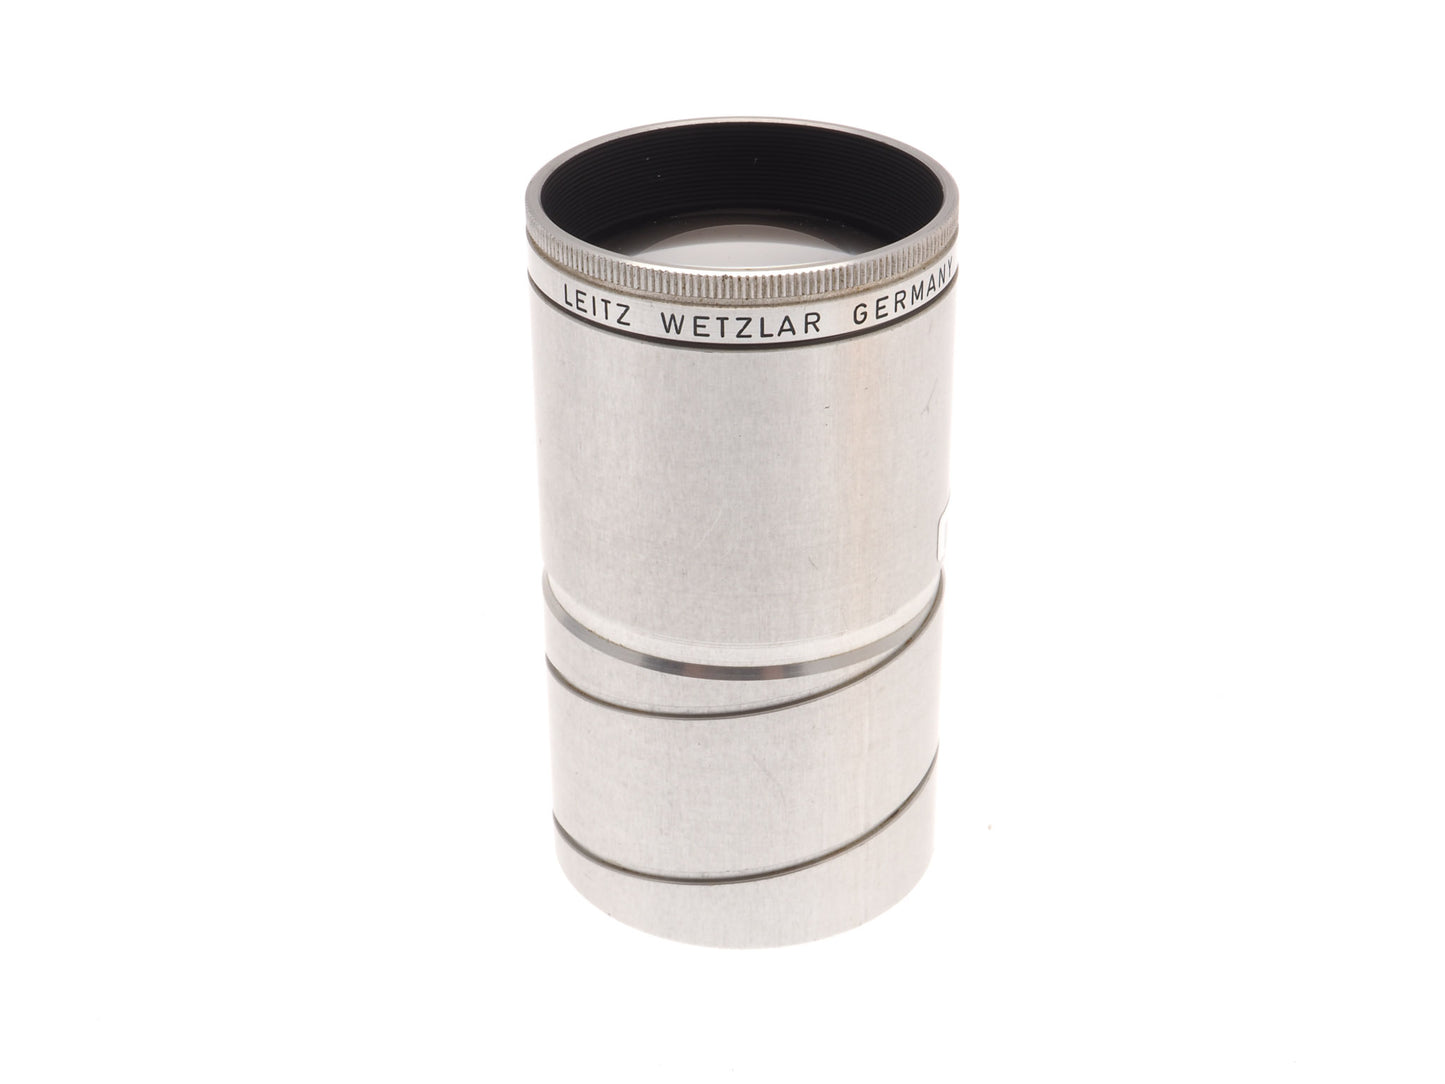 Leica 100mm f2.8 Dimaron - Lens